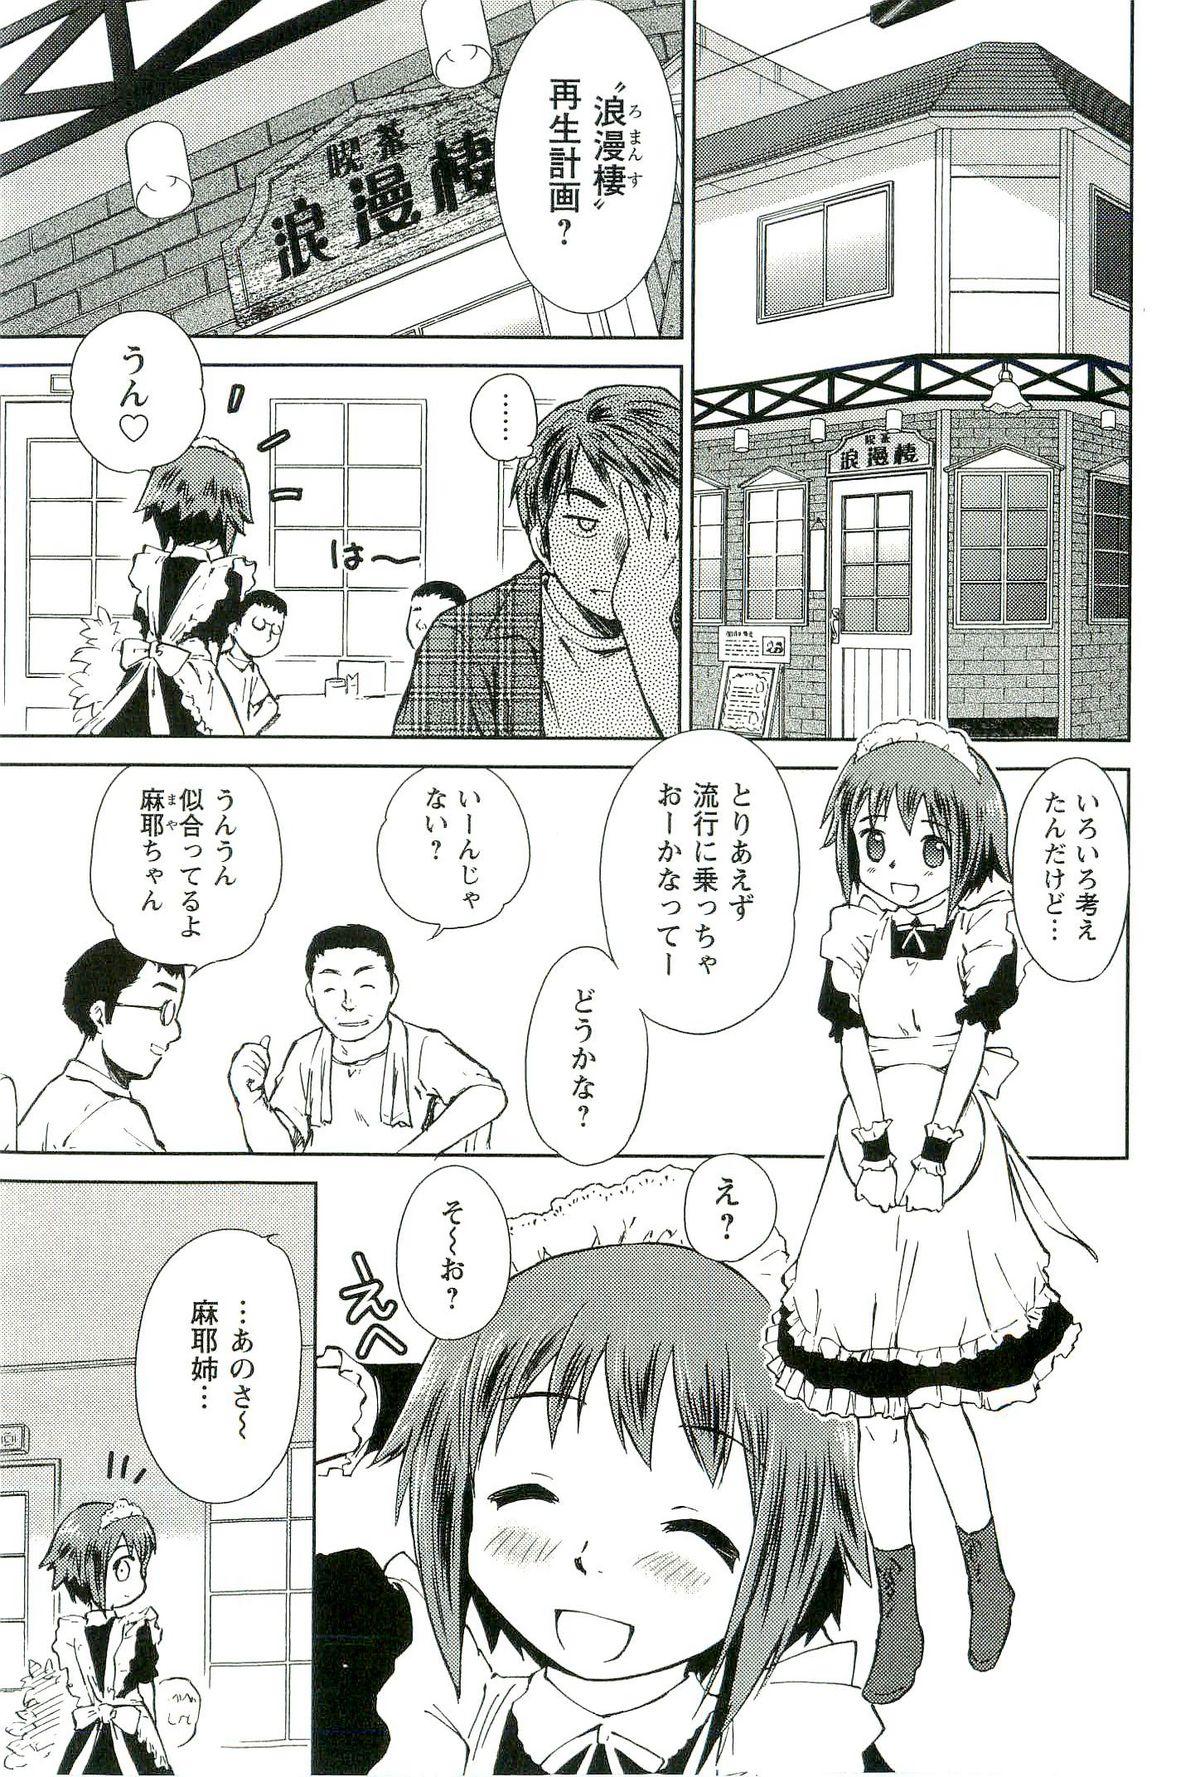 Nerd Romance Jigoku - An Abyss of Romance Awesome - Page 8